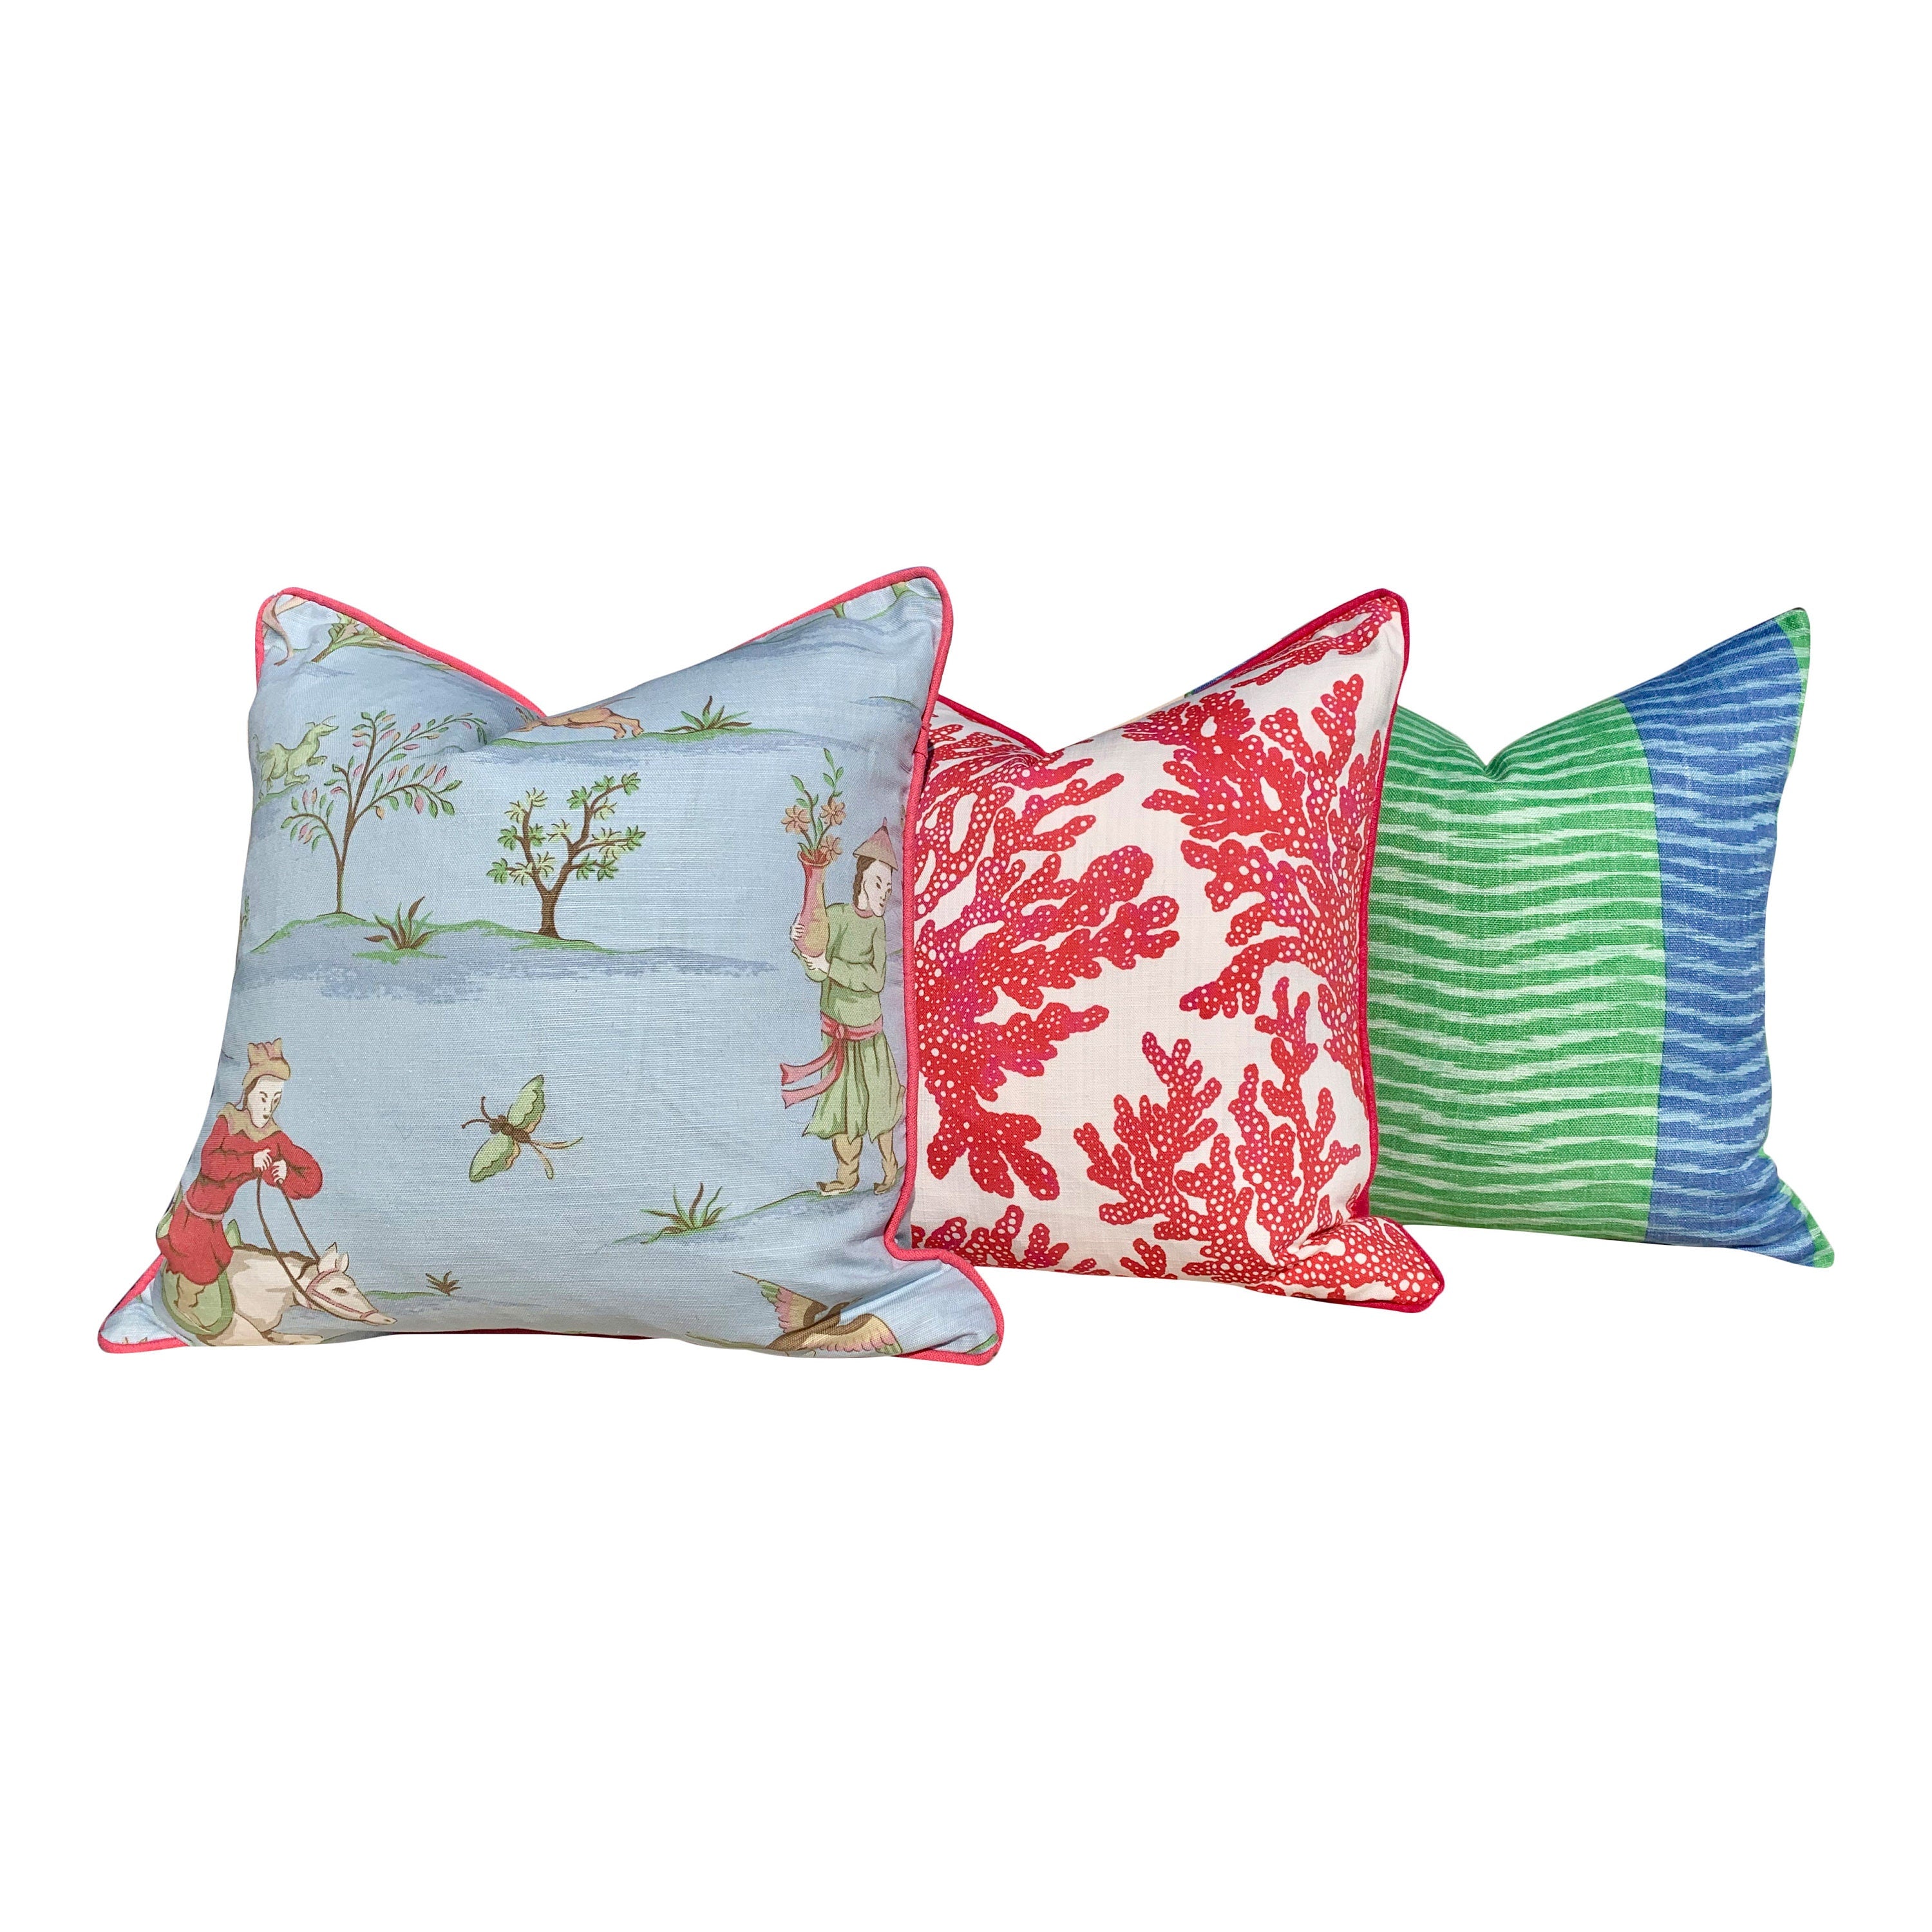 Thibaut Marine Coral Pillow Cover. Lumbar Coastal Pillow in Coral. Designer Coastal Pillow, Tropical Accent Pillow, Lumbar Pillow Throw